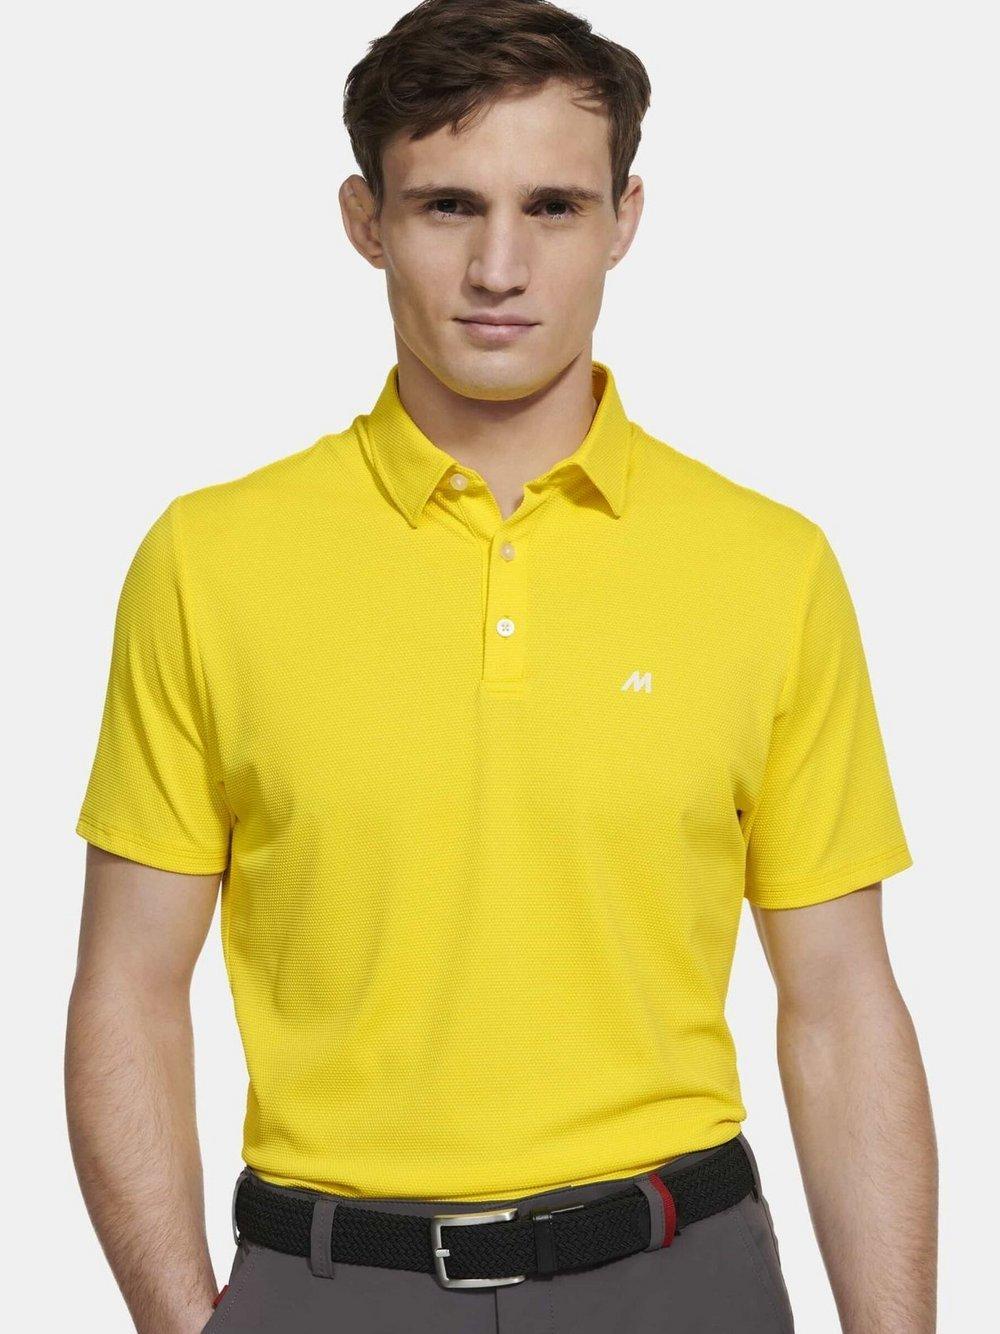 MEYER Poloshirt Herren Polyamid V-Ausschnitt, gelb von MEYER